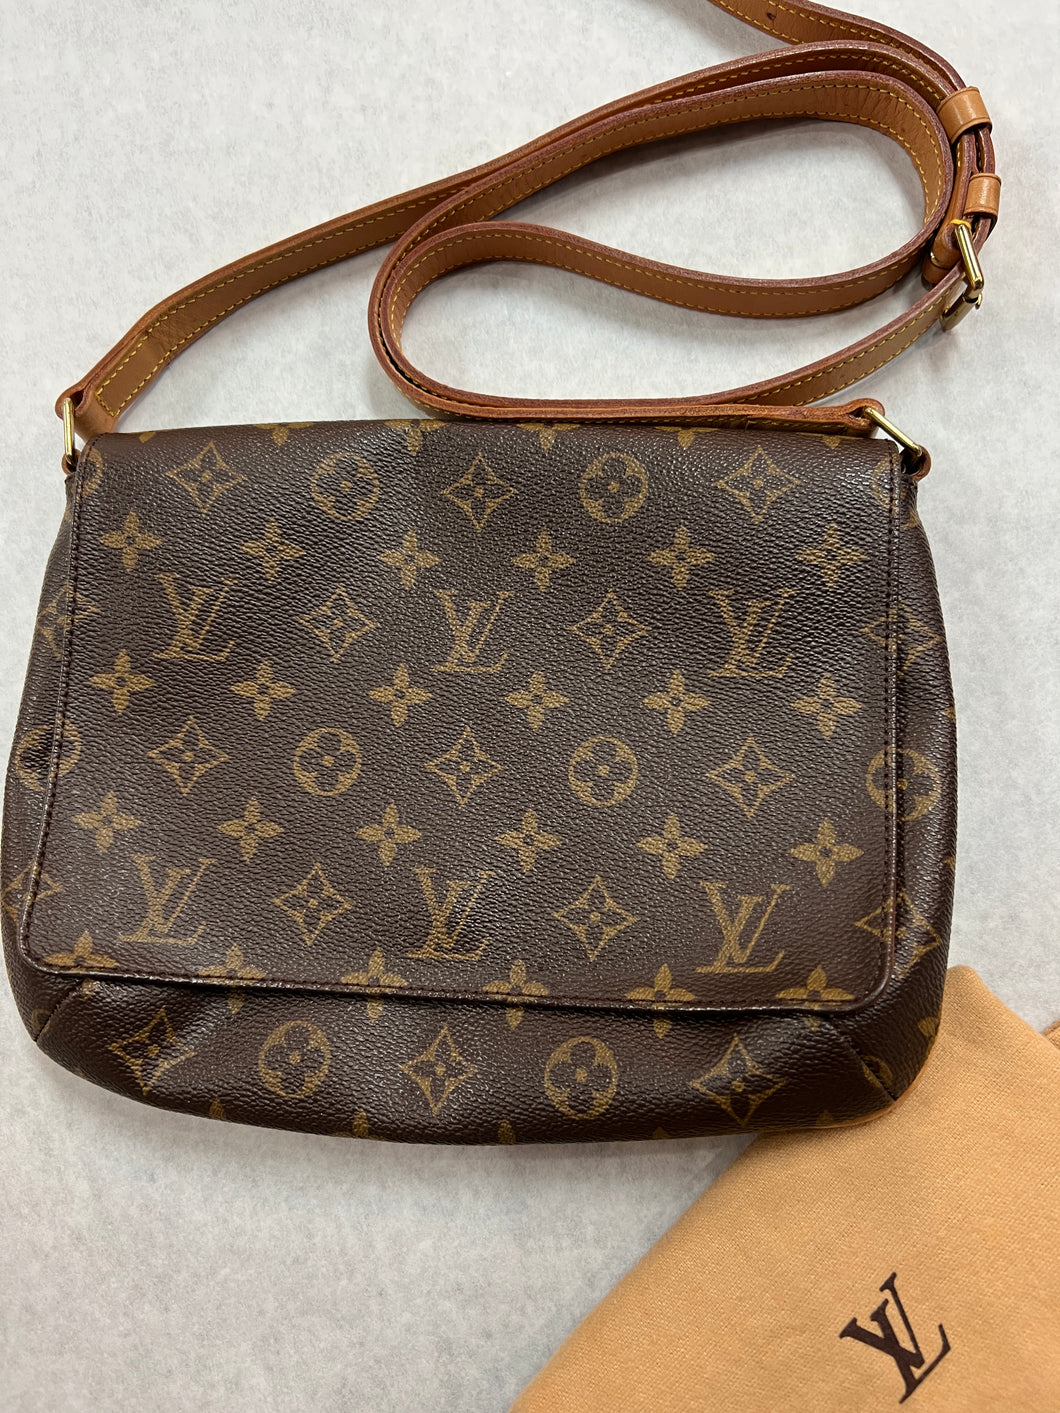 Louis Vuitton, Bags, Authentic Louis Vuitton Sling Bag